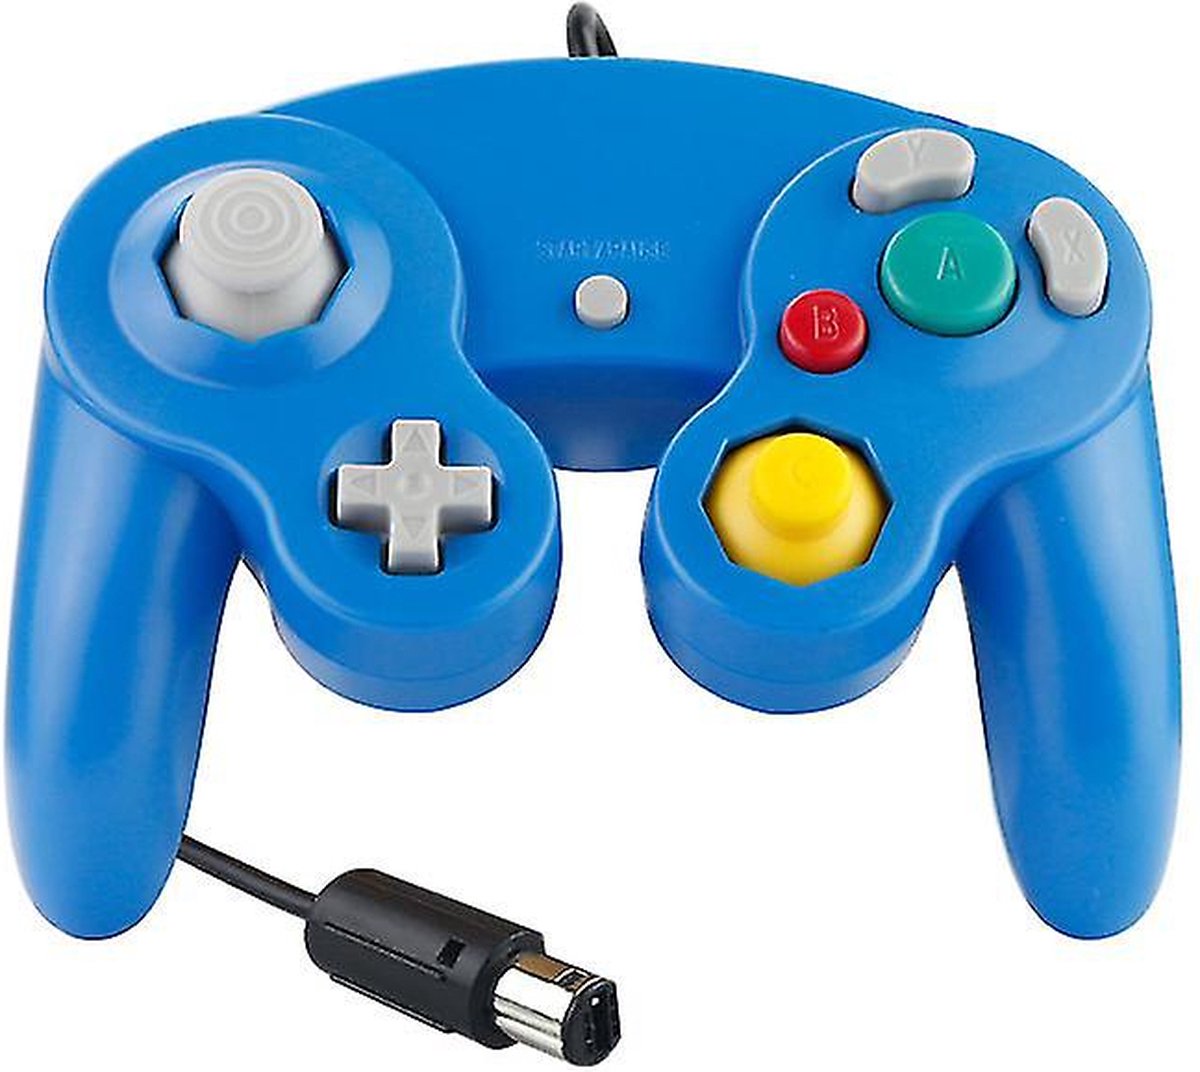 Controller geschikt voor Gamecube en Wii - Blauw - Merkloos